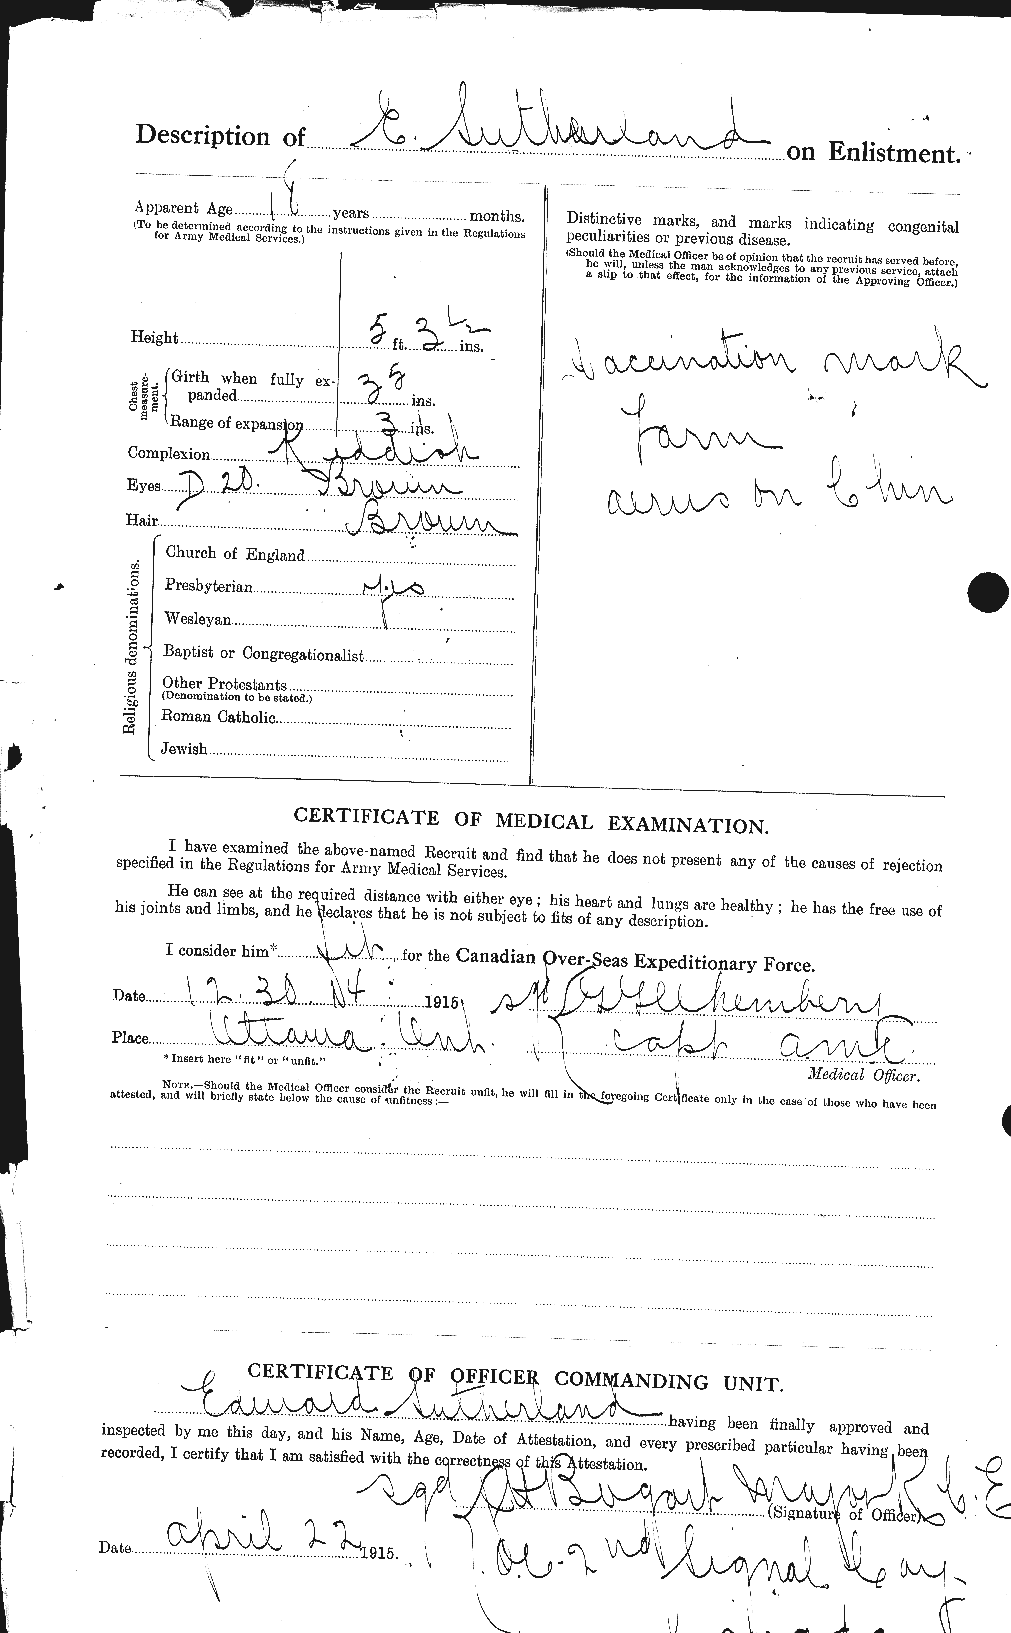 Dossiers du Personnel de la Première Guerre mondiale - CEC 124902b